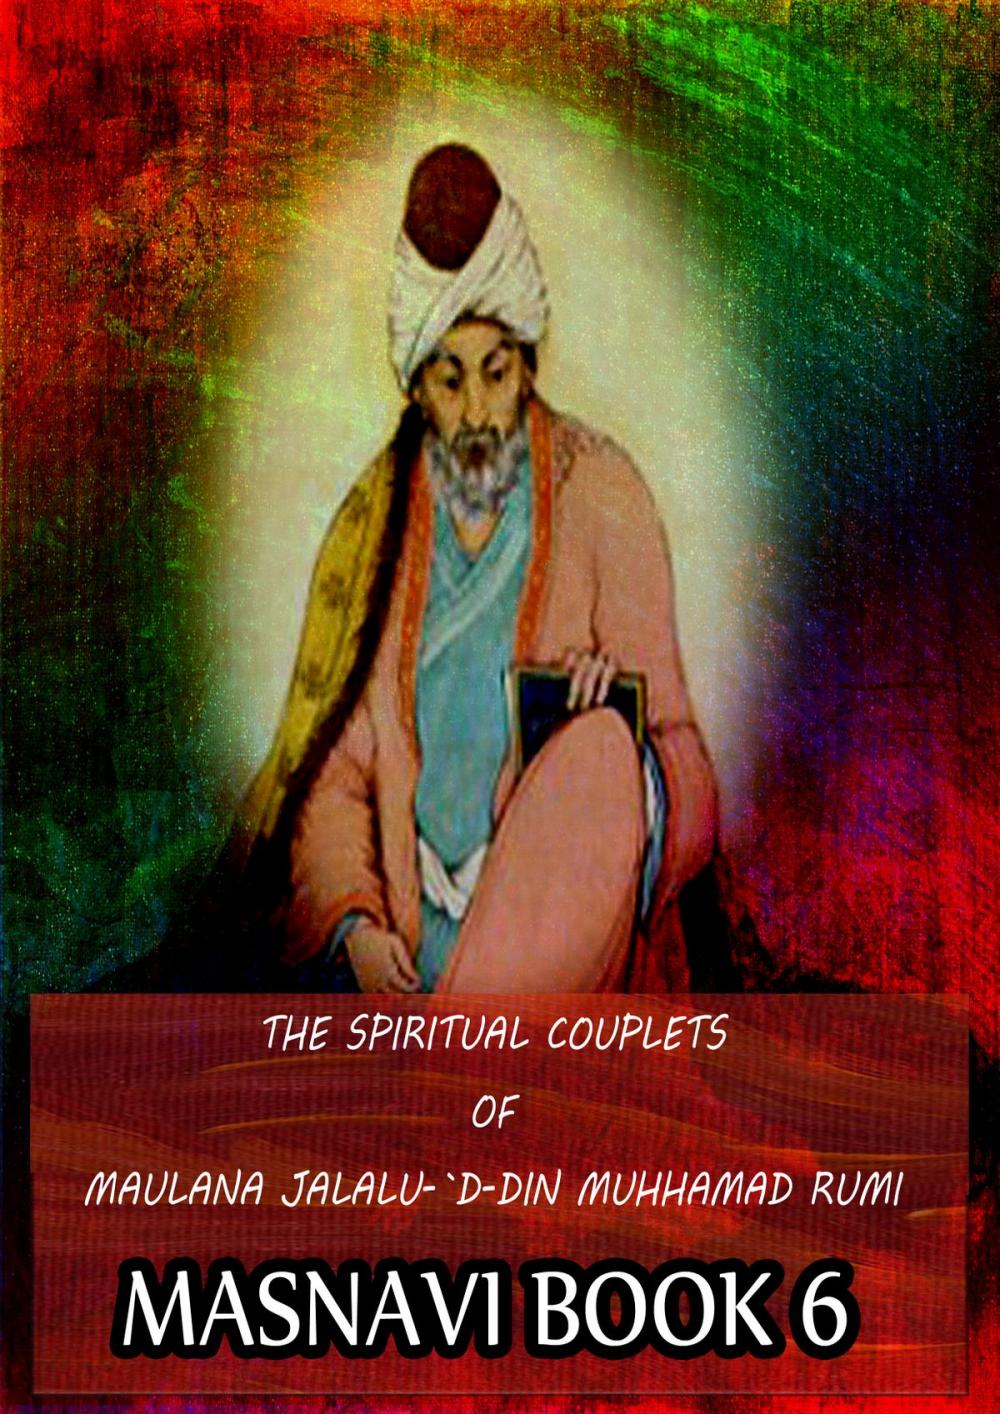 Big bigCover of THE SPIRITUAL COUPLETS OF MAULANA JALALU-'D-DlN MUHAMMAD RUMI Masnavi Book 6